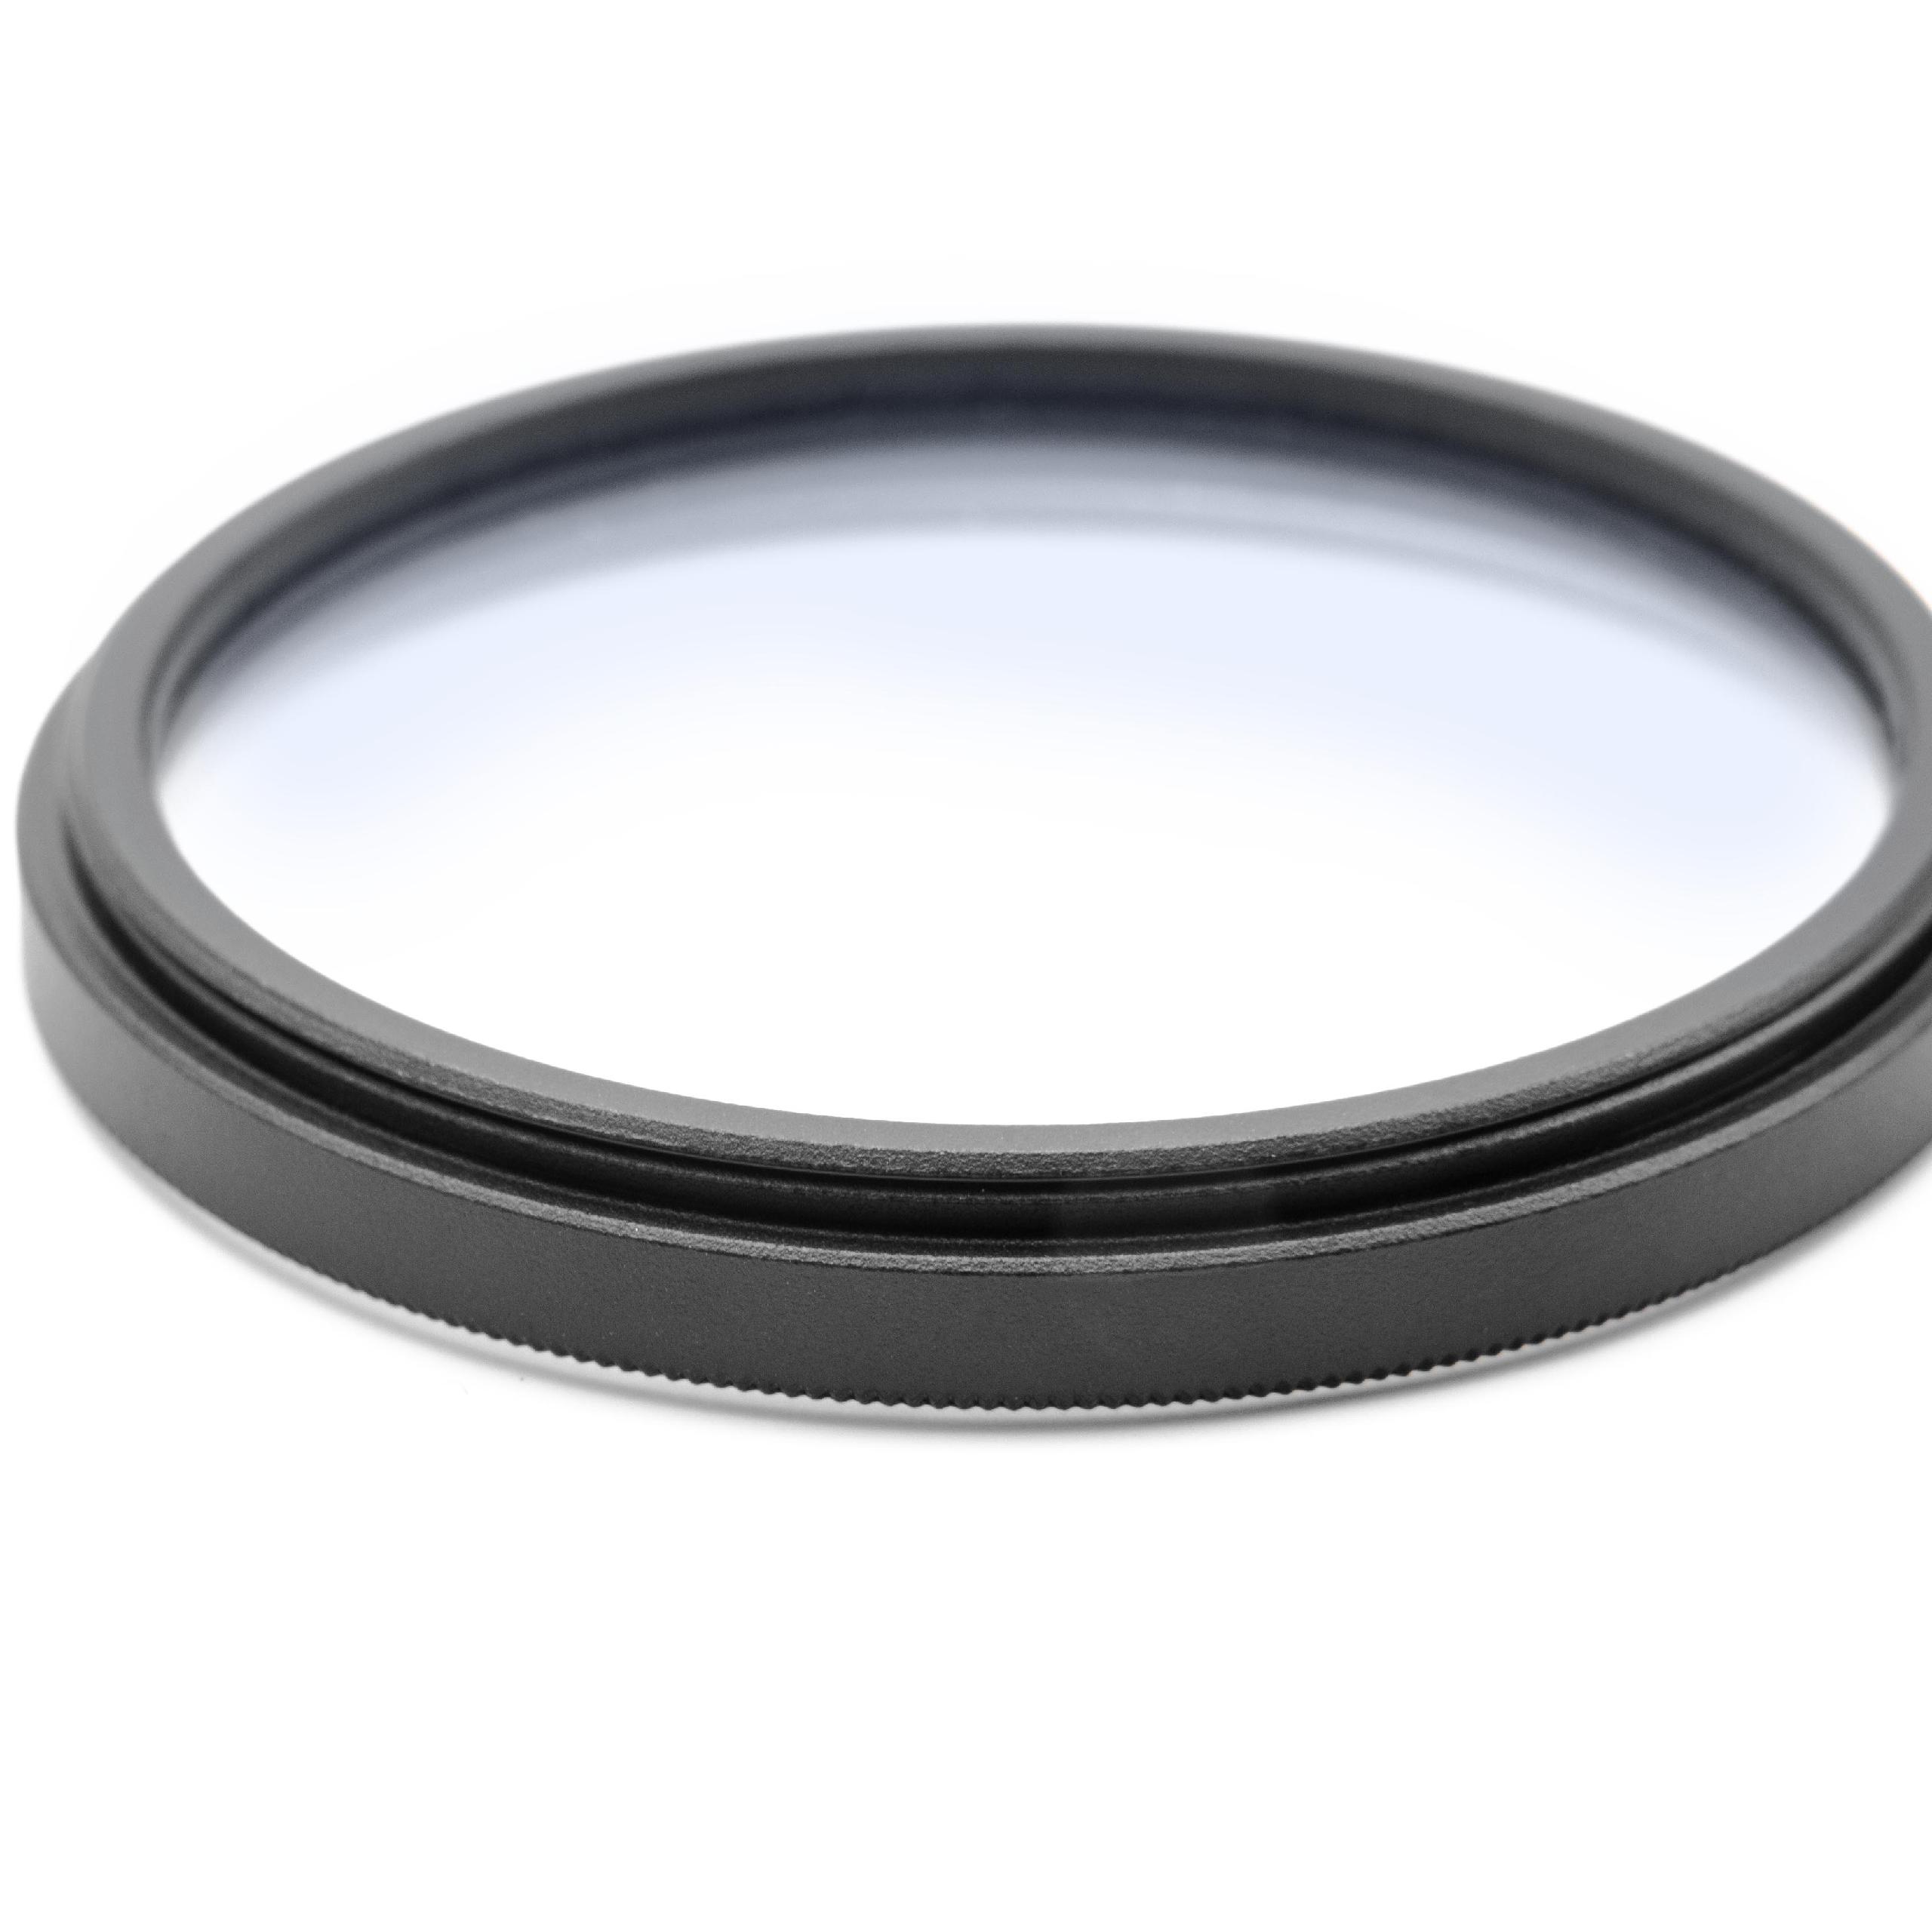 Filtr dyfuzyjny 49mm na obiektyw do różnych aparatów - filtr soft focus